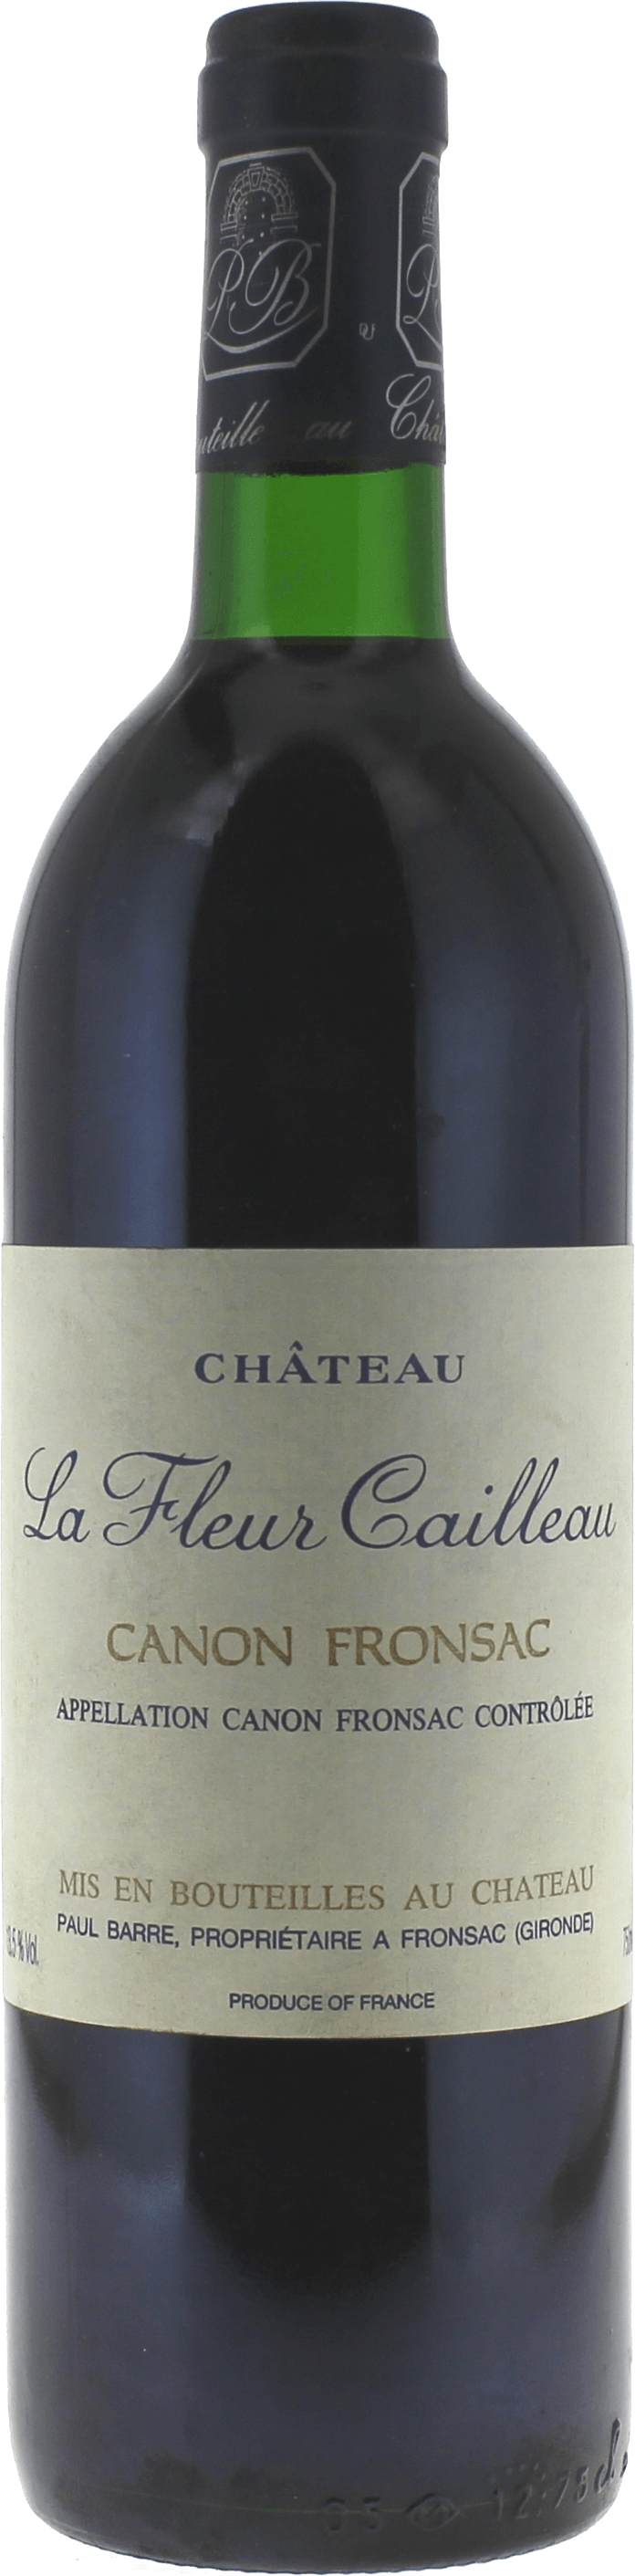 La fleur cailleau 1989  Canon Fronsac, Bordeaux rouge